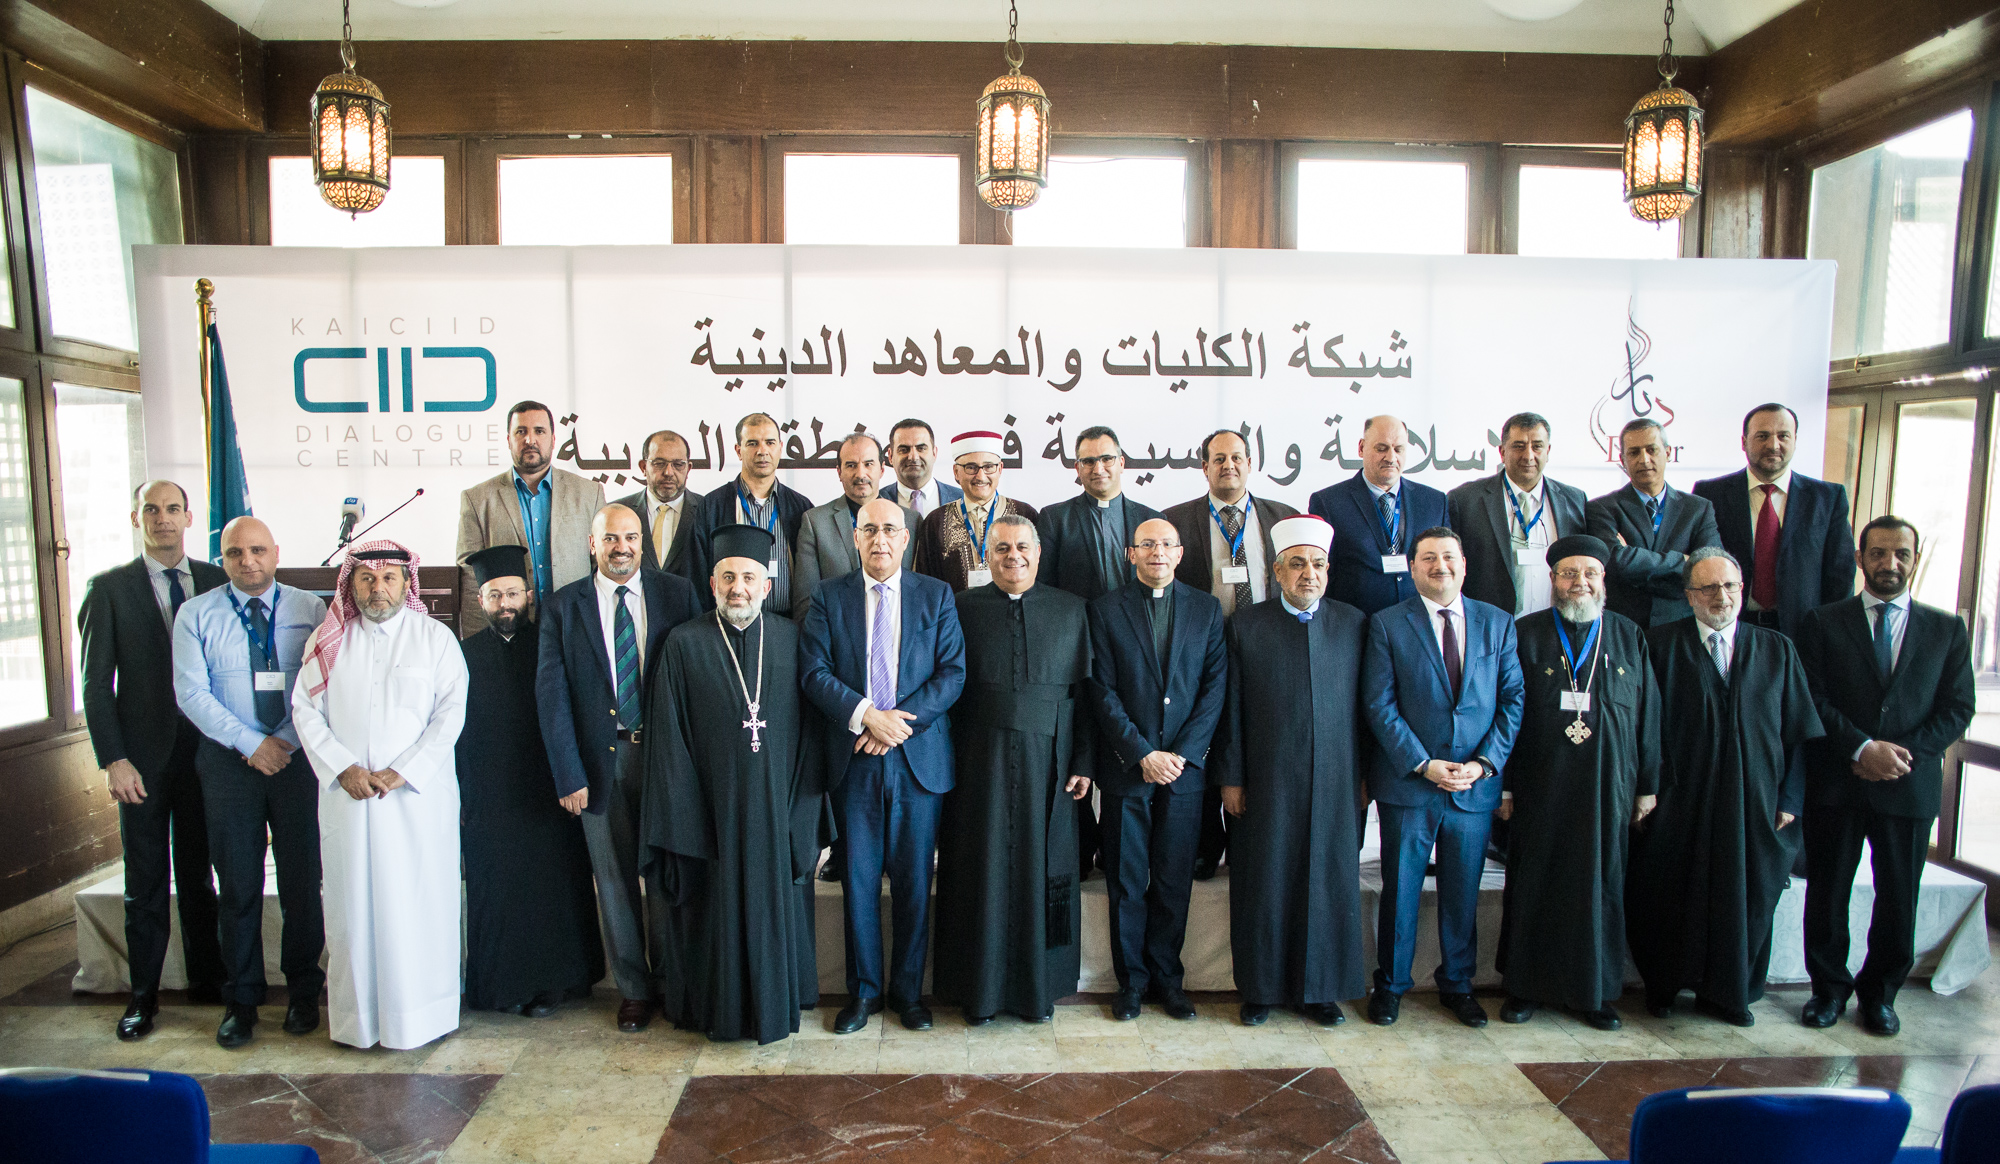 Red de facultades e institutos religiosos cristianos y musulmanes en el mundo árabe